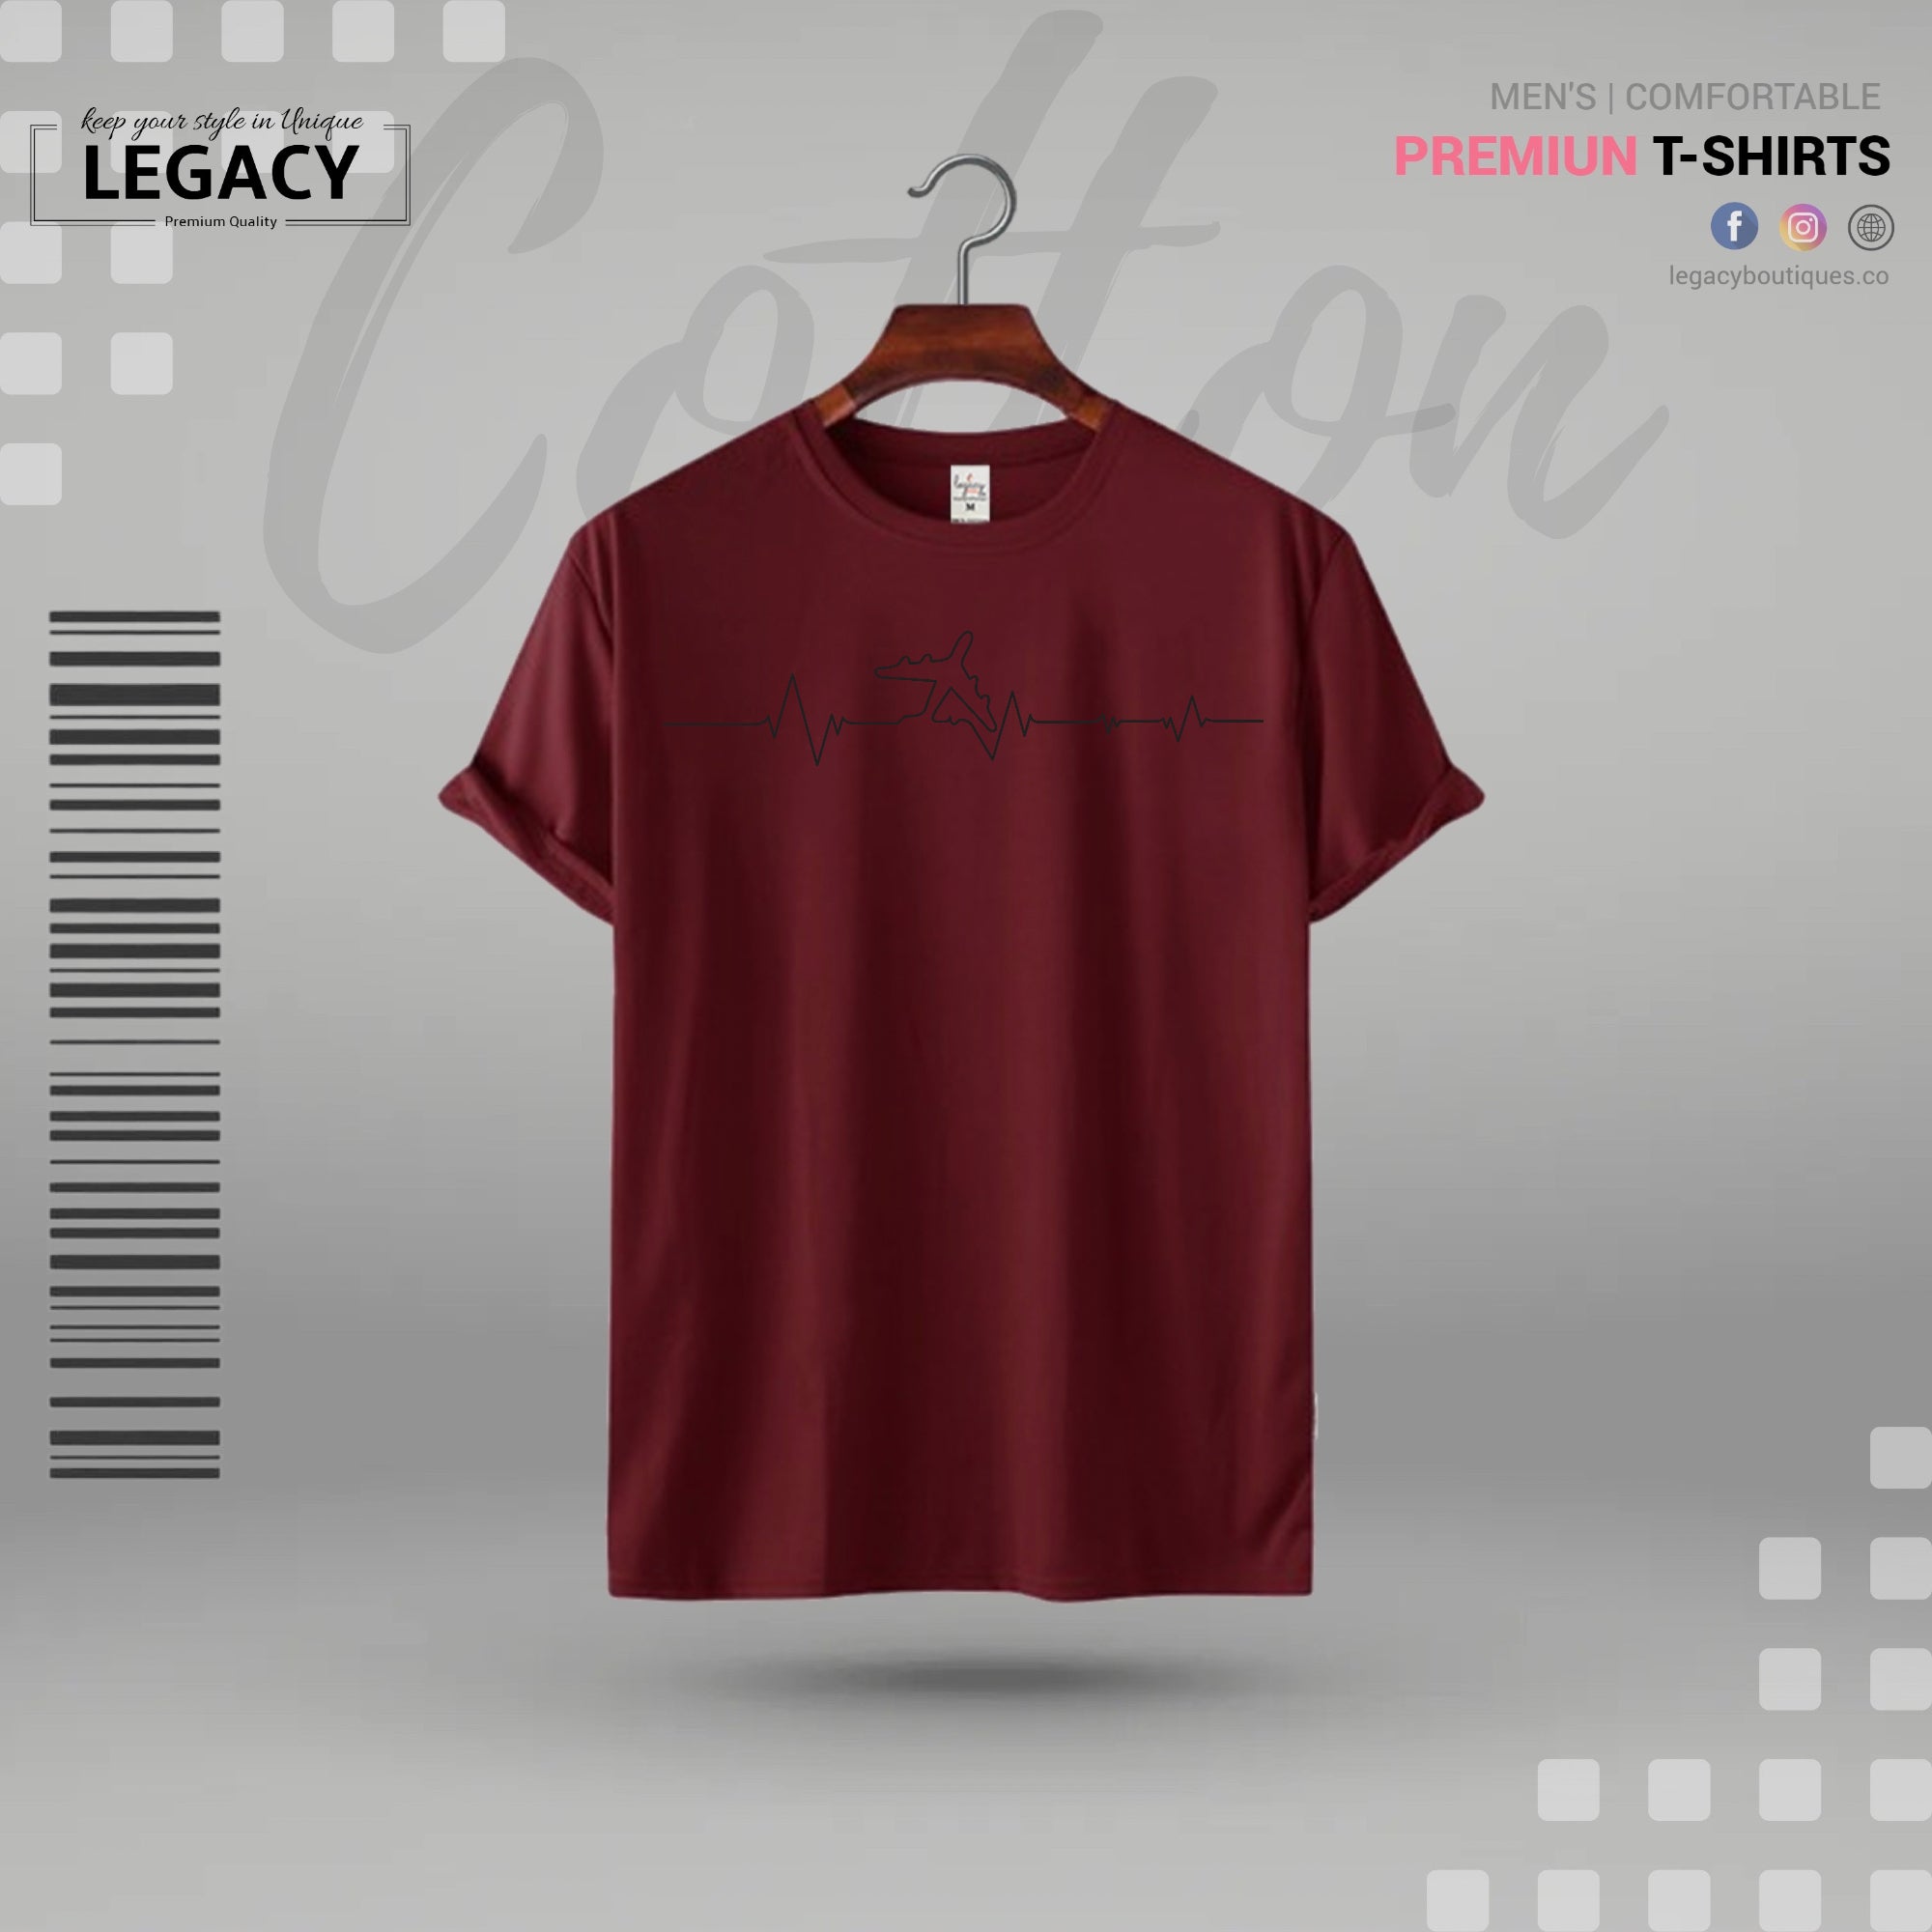 Men Cootton T Shirt - Legacy Boutiques